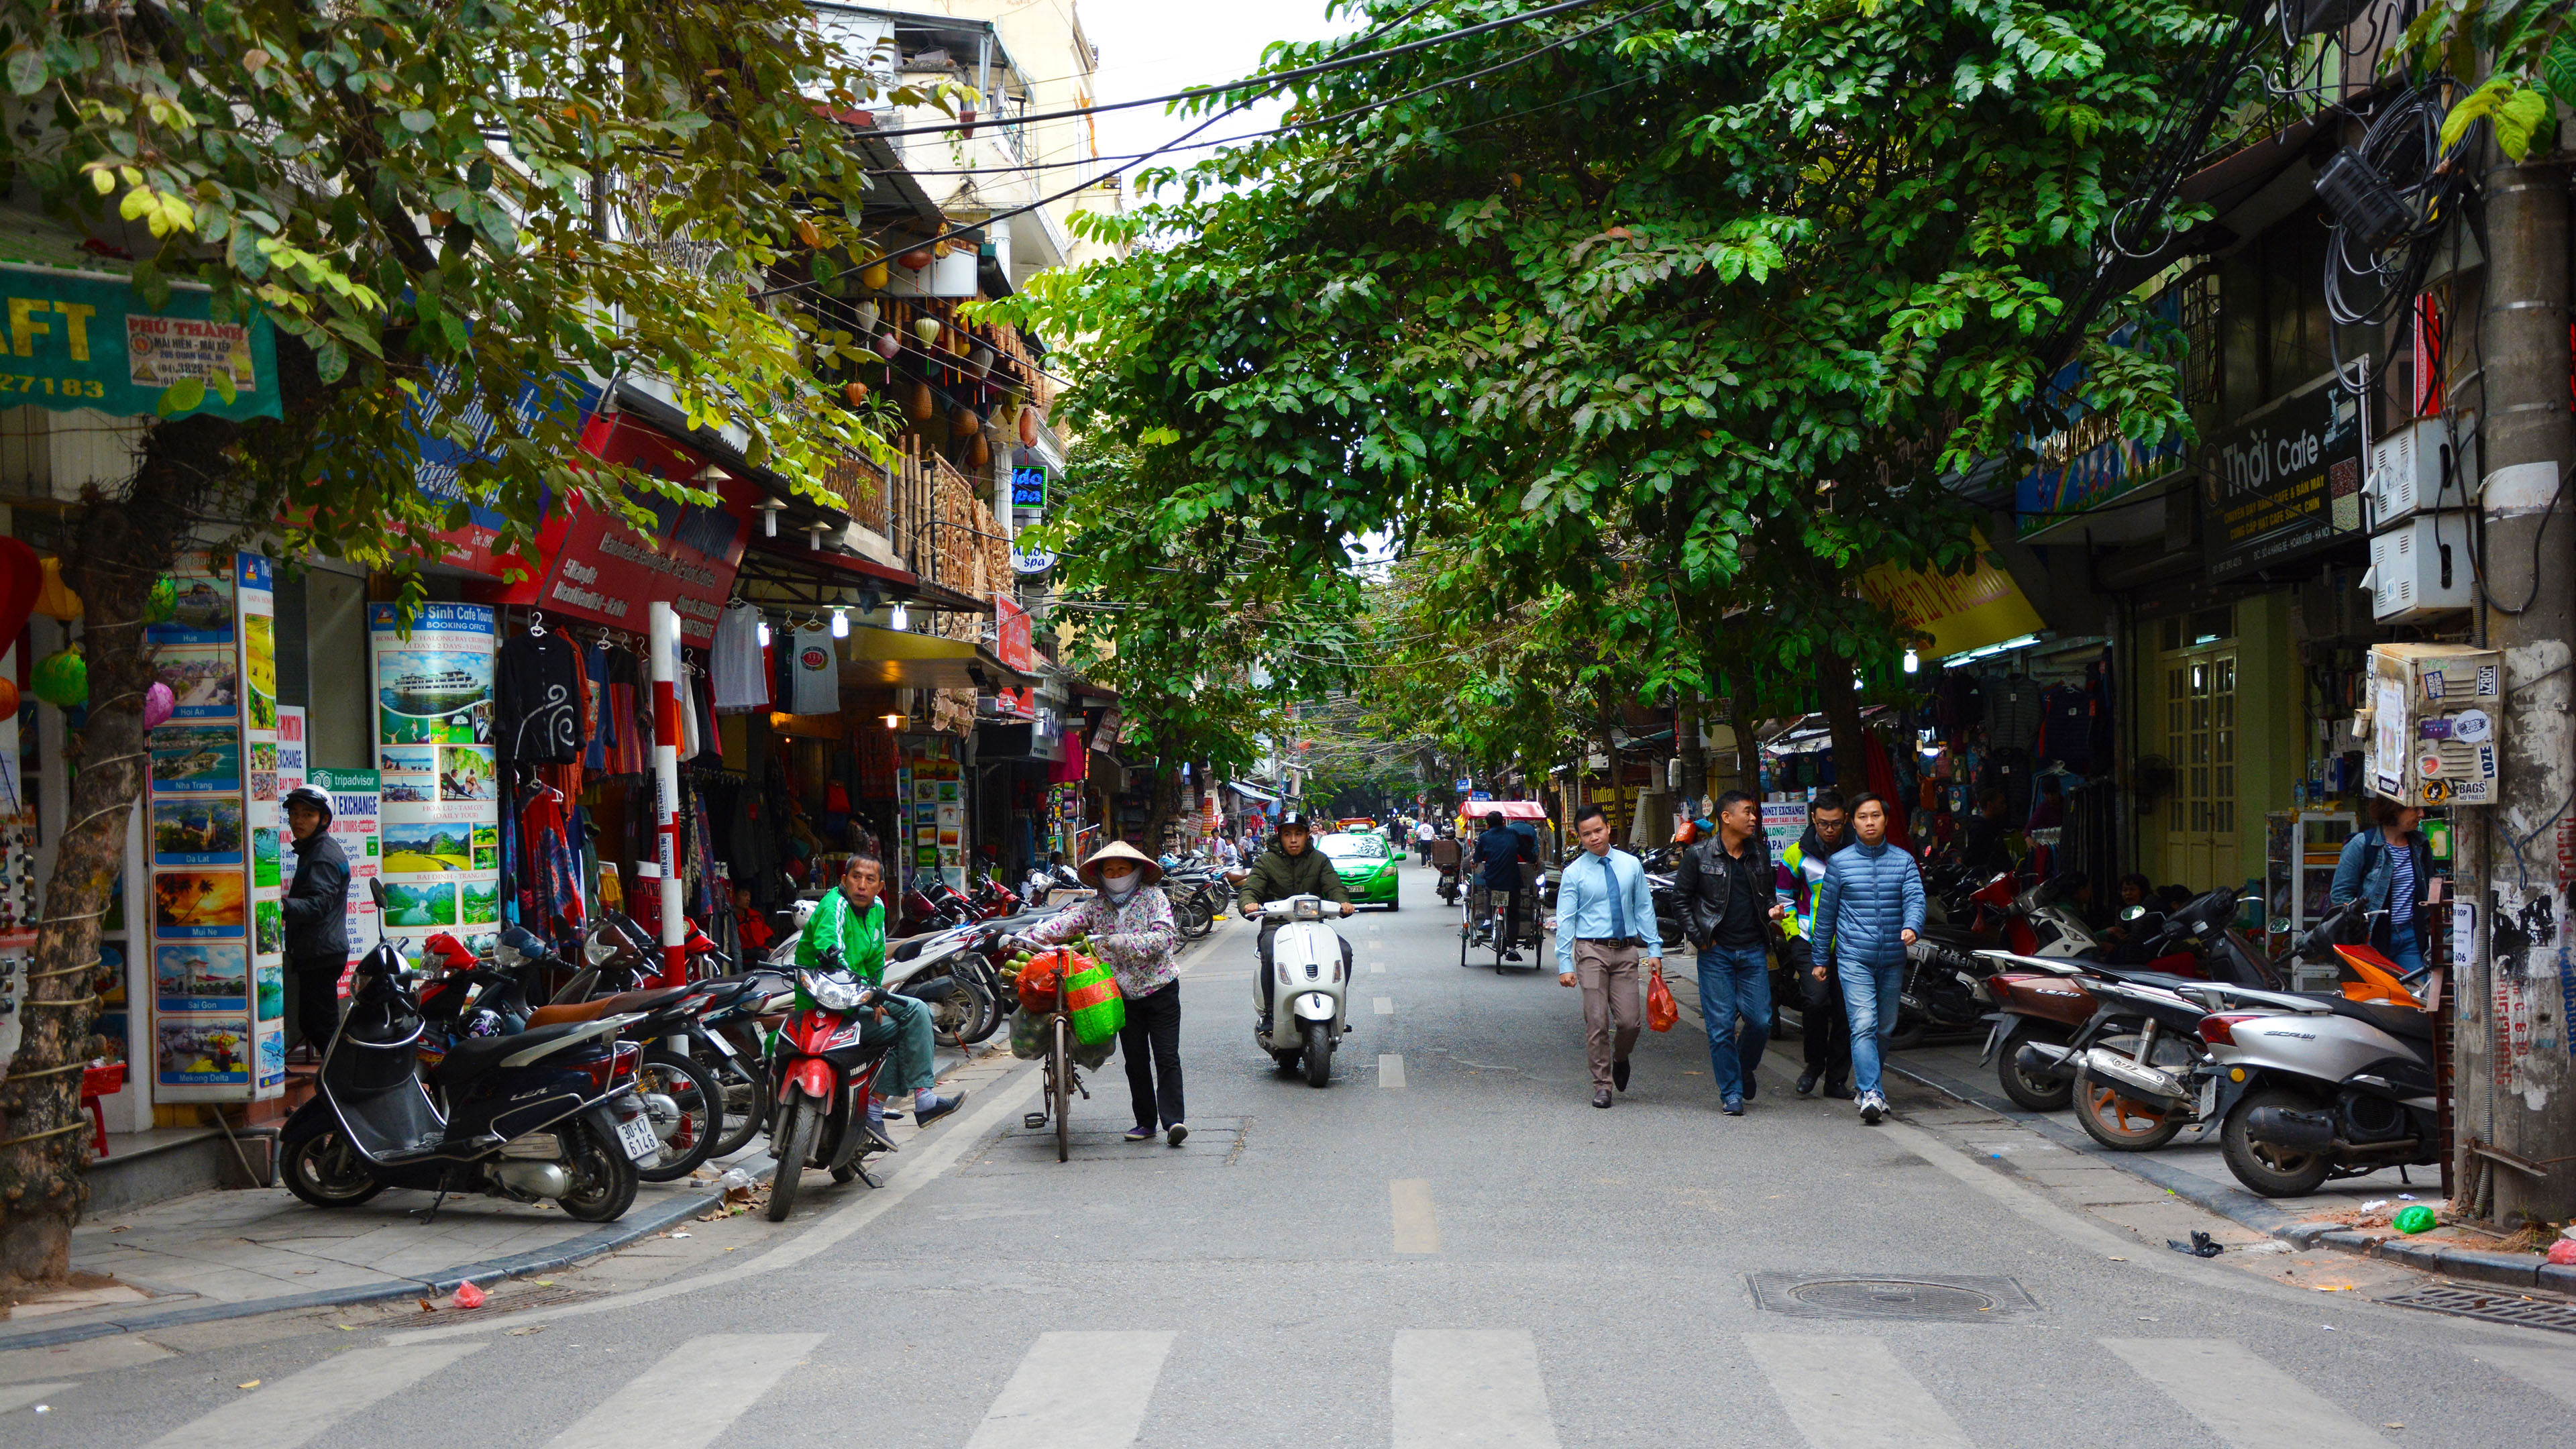 Streets in Hanoi